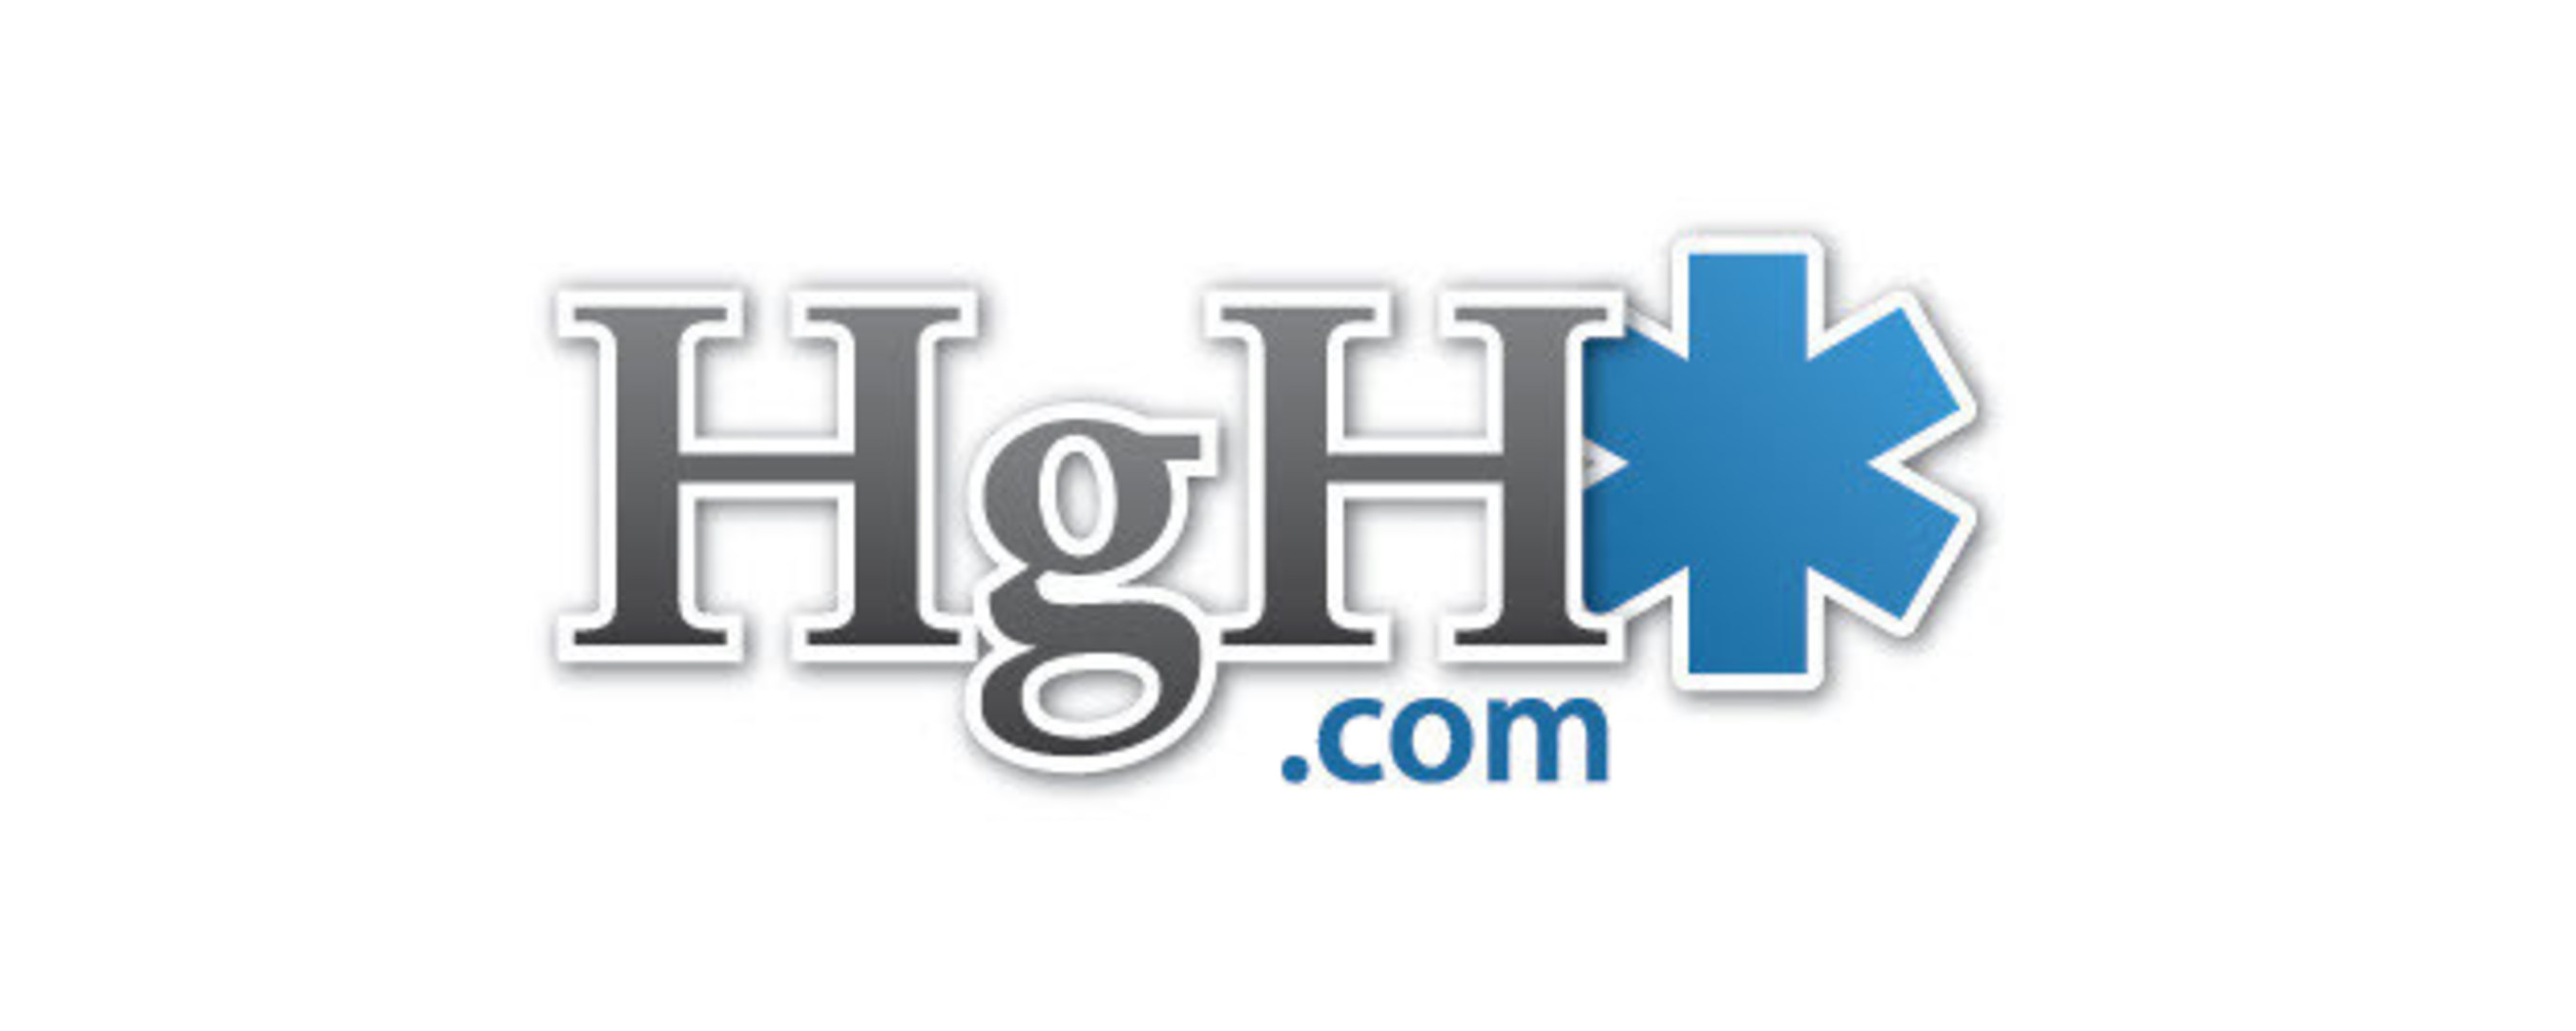 HGH.com logo (PRNewsFoto/HGH.com)